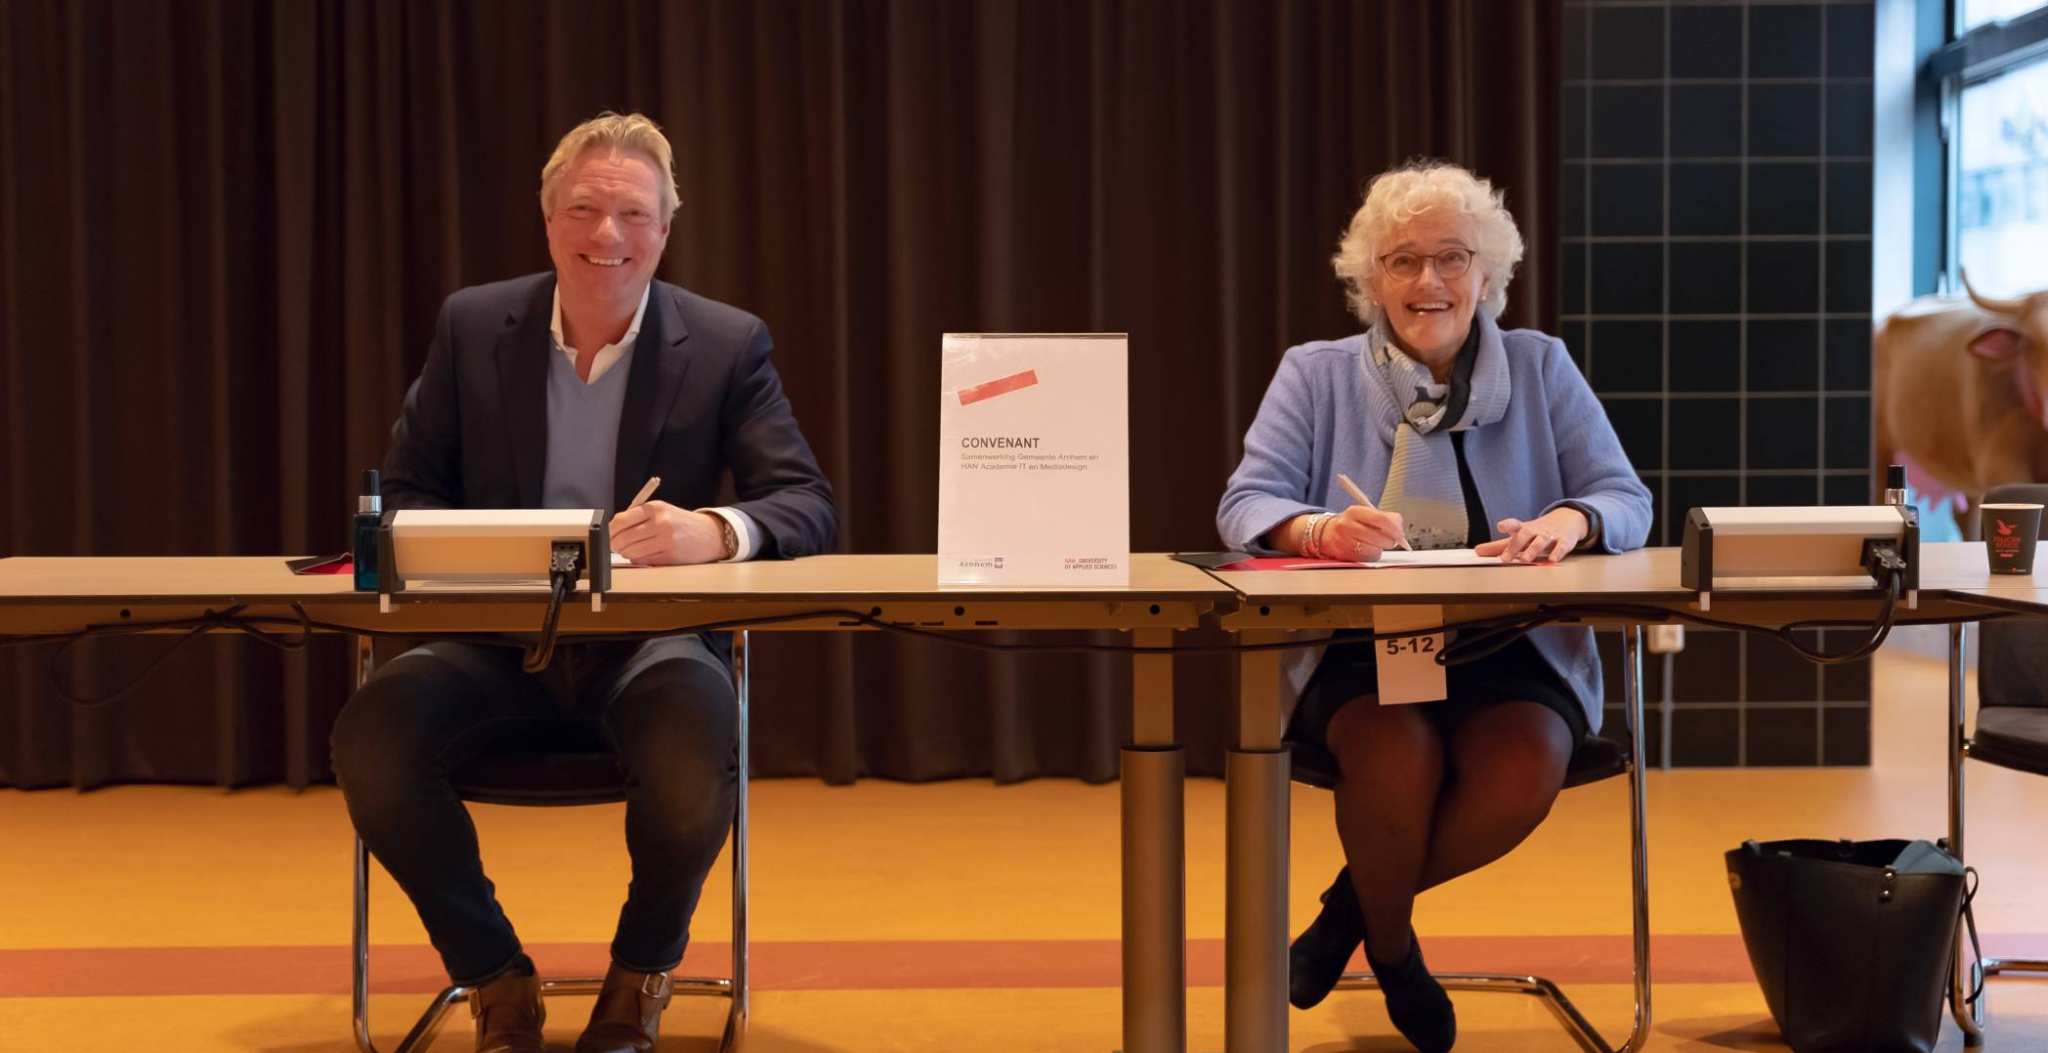 Ondertekening samenwerking convenant Yvonne de Haan en Jan van Dellen